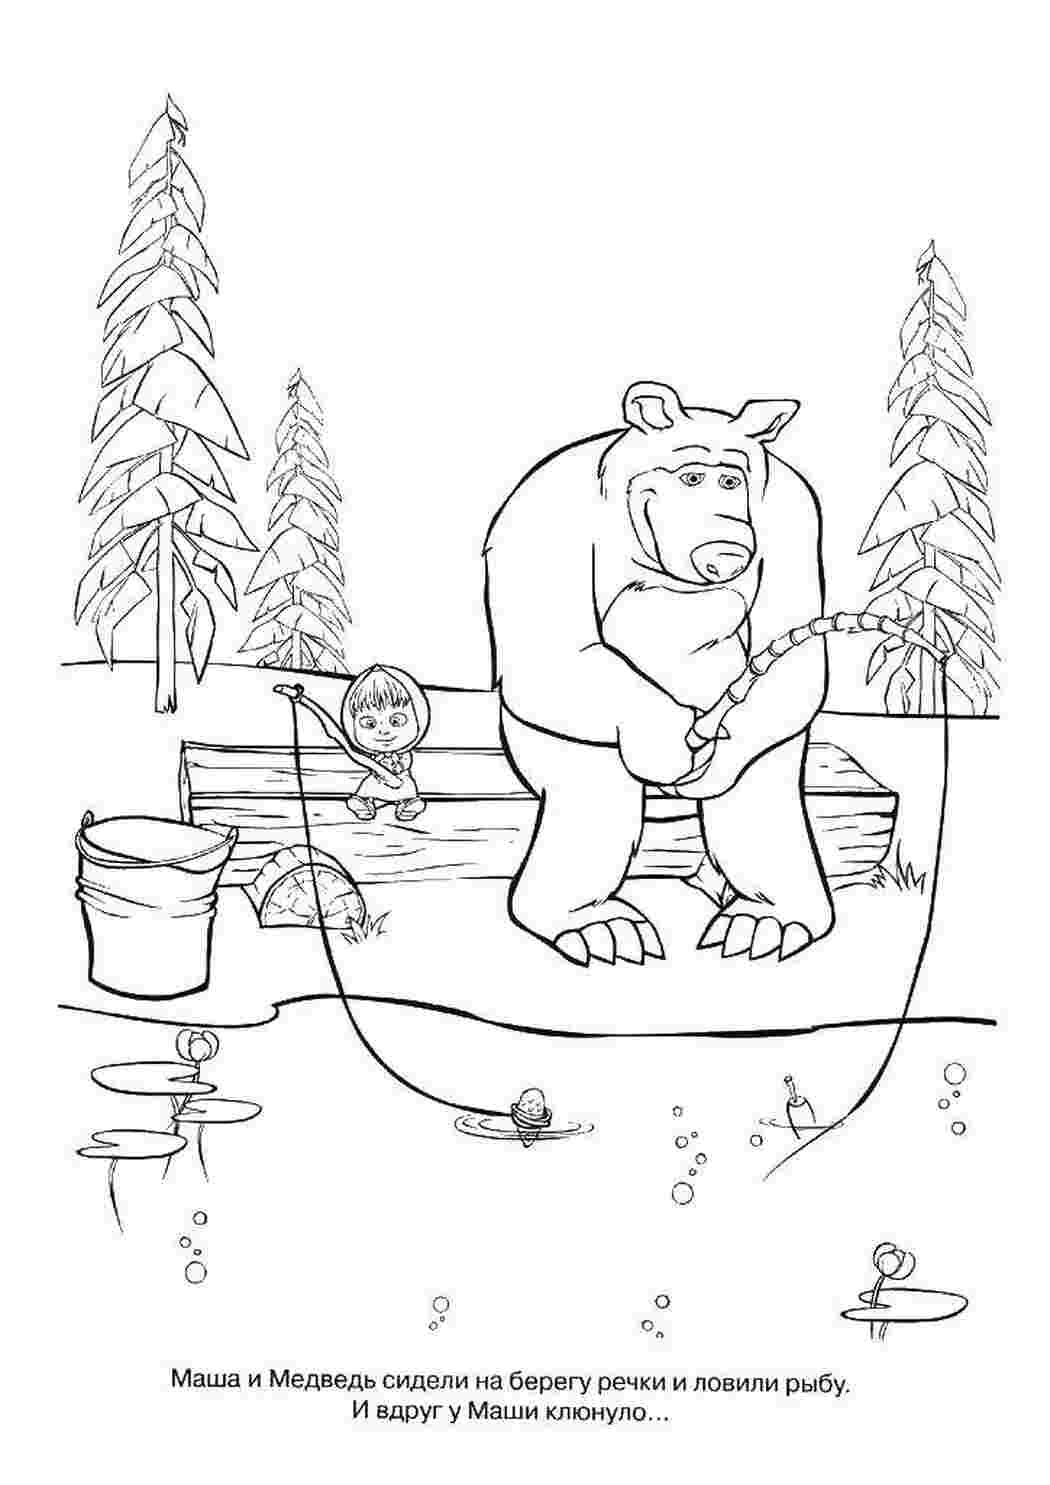 Раскраски Раскраски для детей про озорную Машу из мультфильма Маша и медведь  Мишка и маша на рыбалке